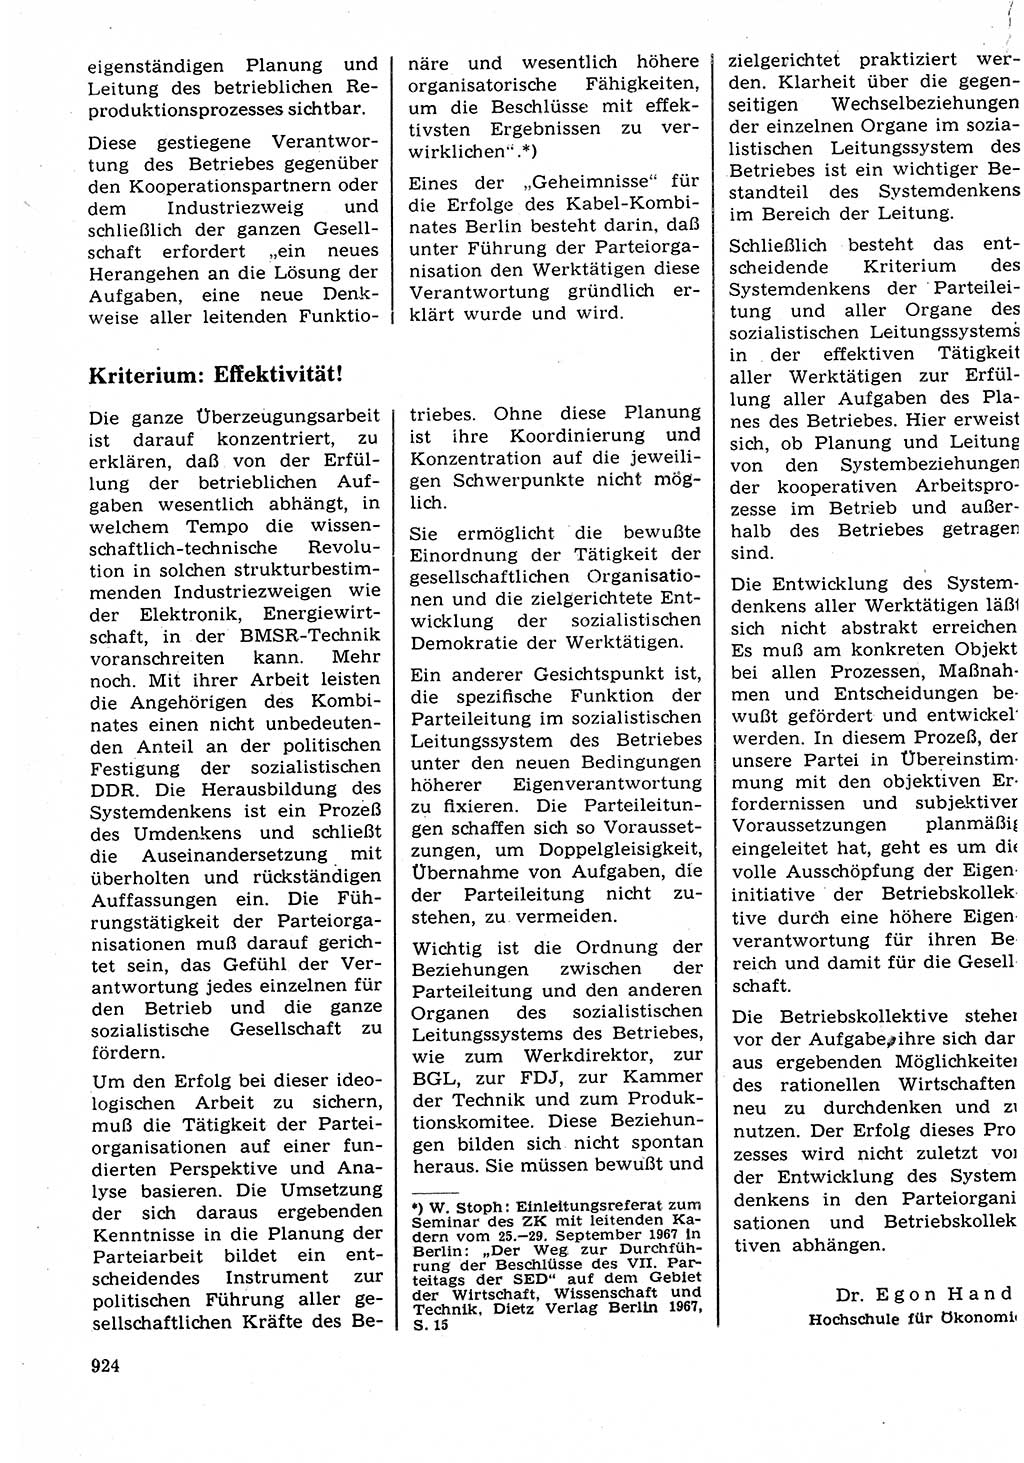 Neuer Weg (NW), Organ des Zentralkomitees (ZK) der SED (Sozialistische Einheitspartei Deutschlands) für Fragen des Parteilebens, 23. Jahrgang [Deutsche Demokratische Republik (DDR)] 1968, Seite 908 (NW ZK SED DDR 1968, S. 908)